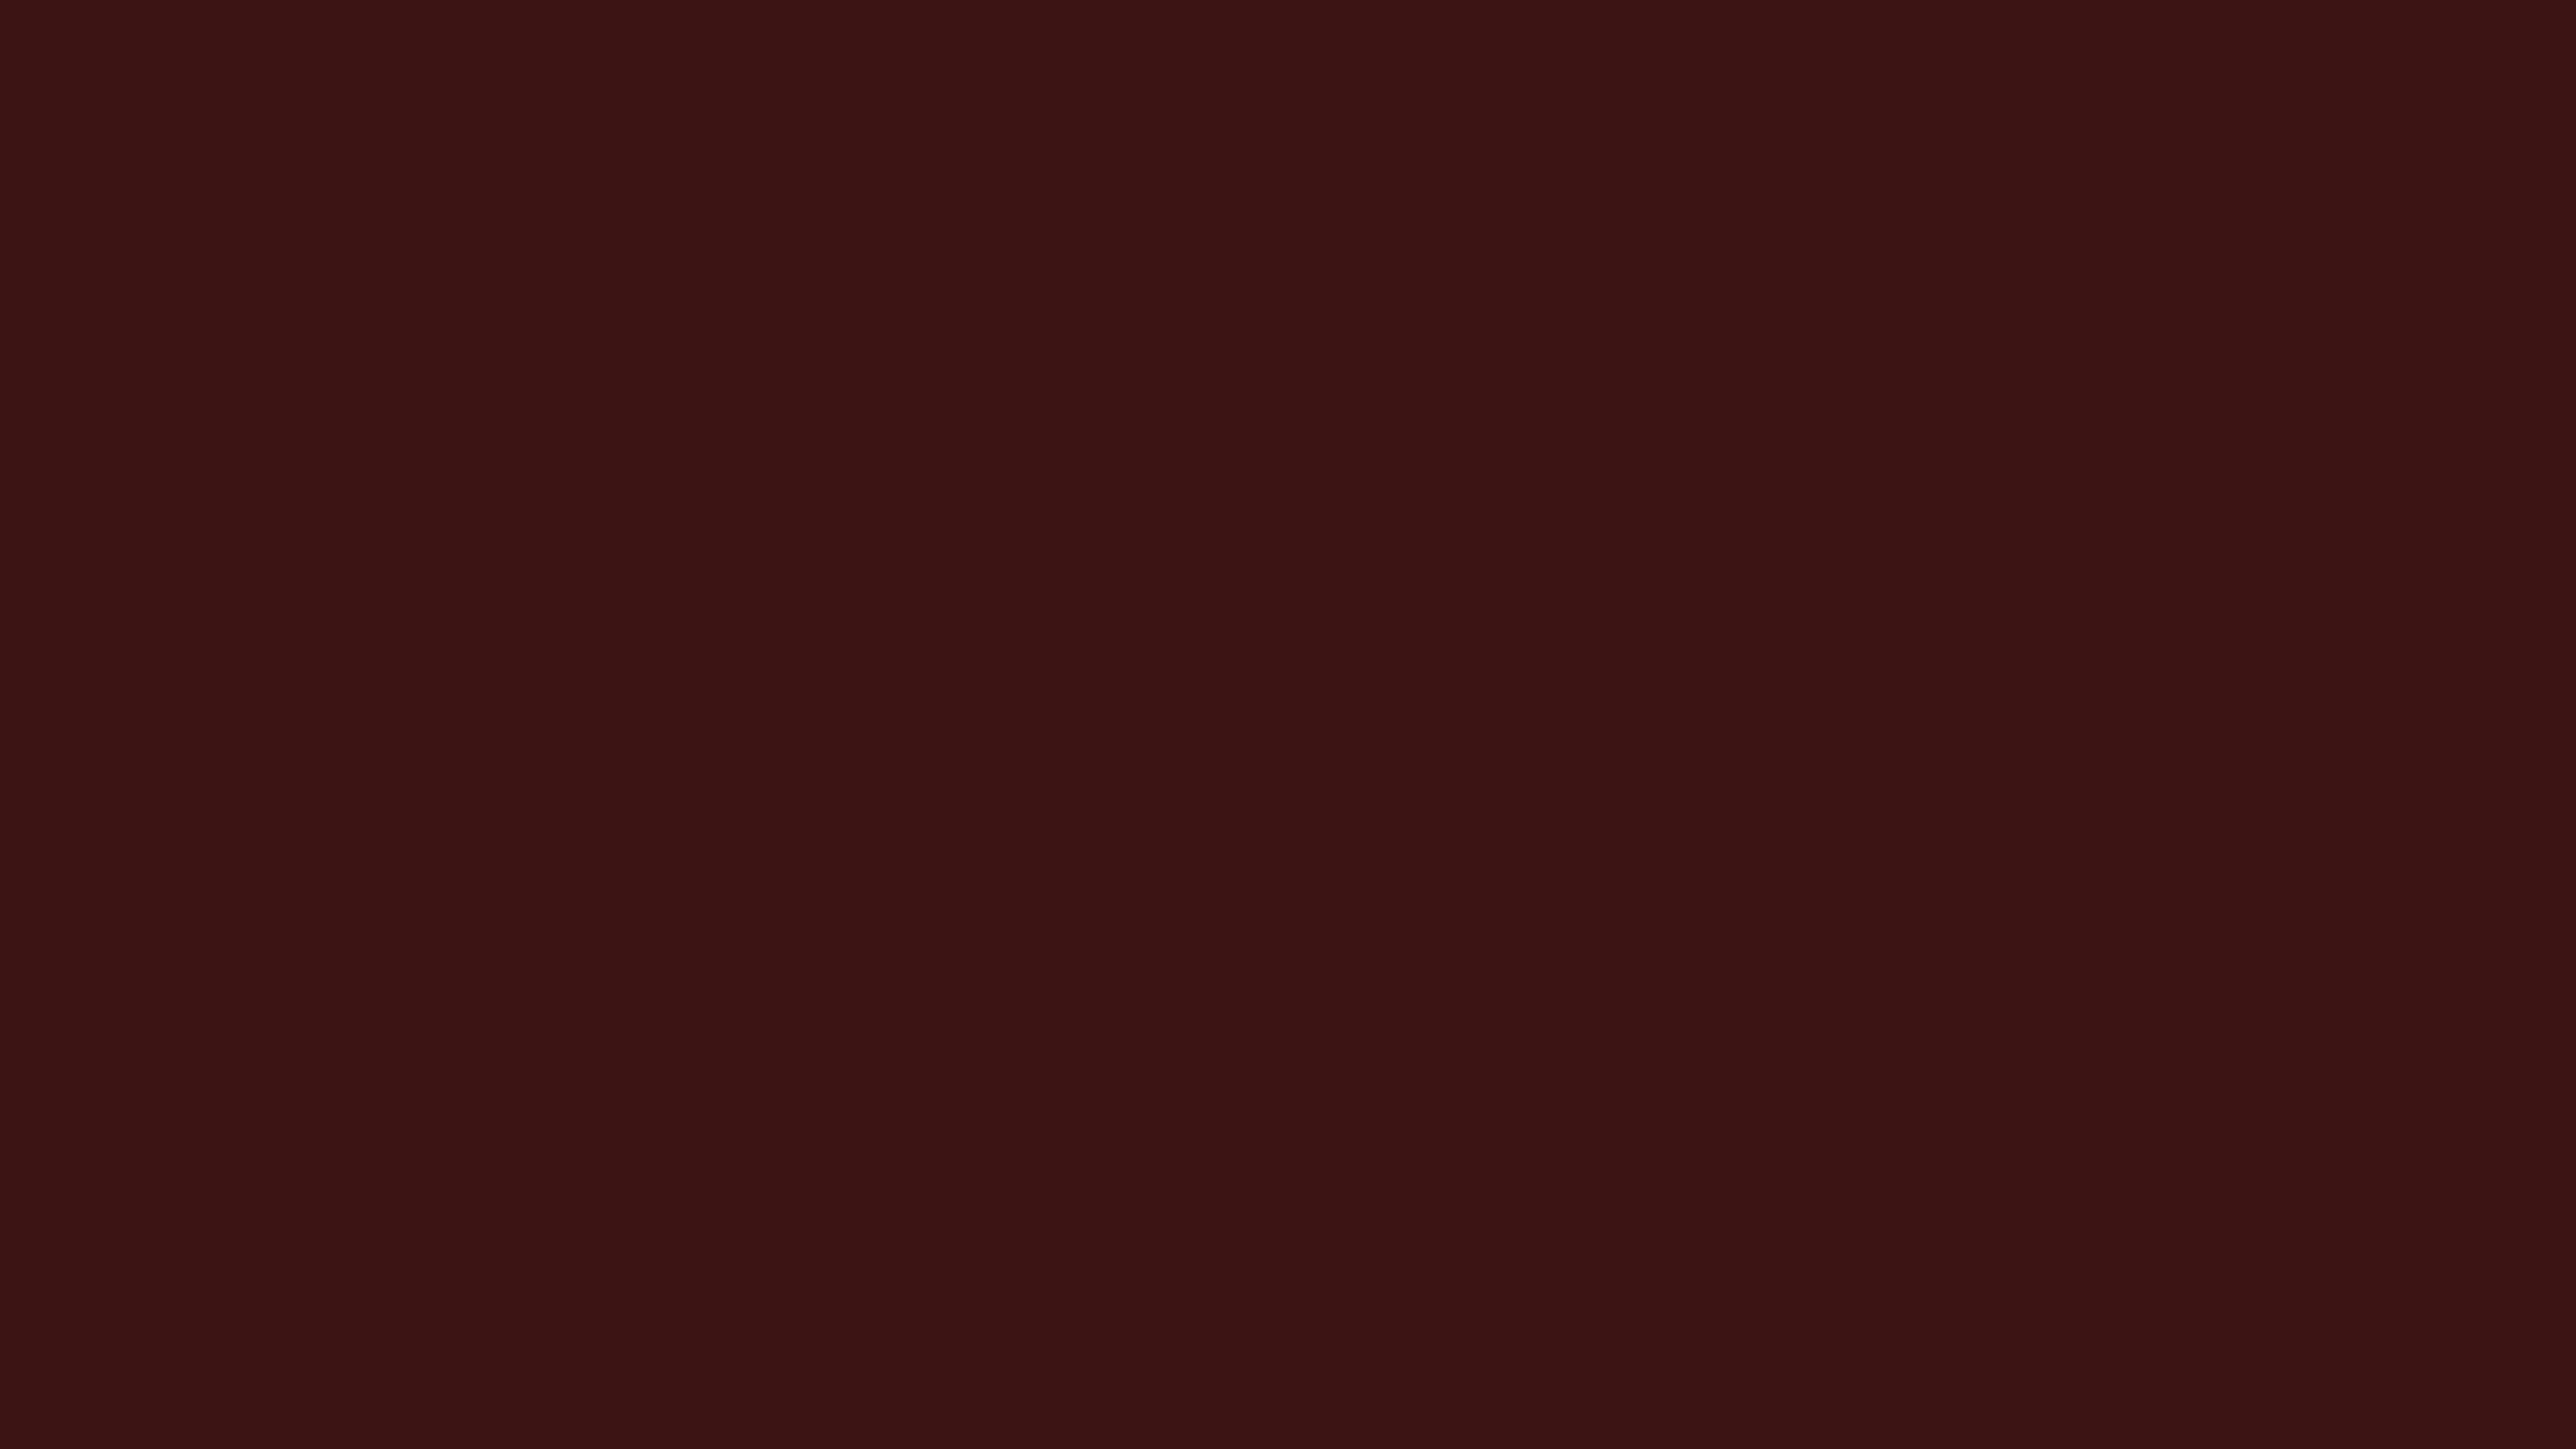 3840x2160 Dark Sienna Solid Color Background